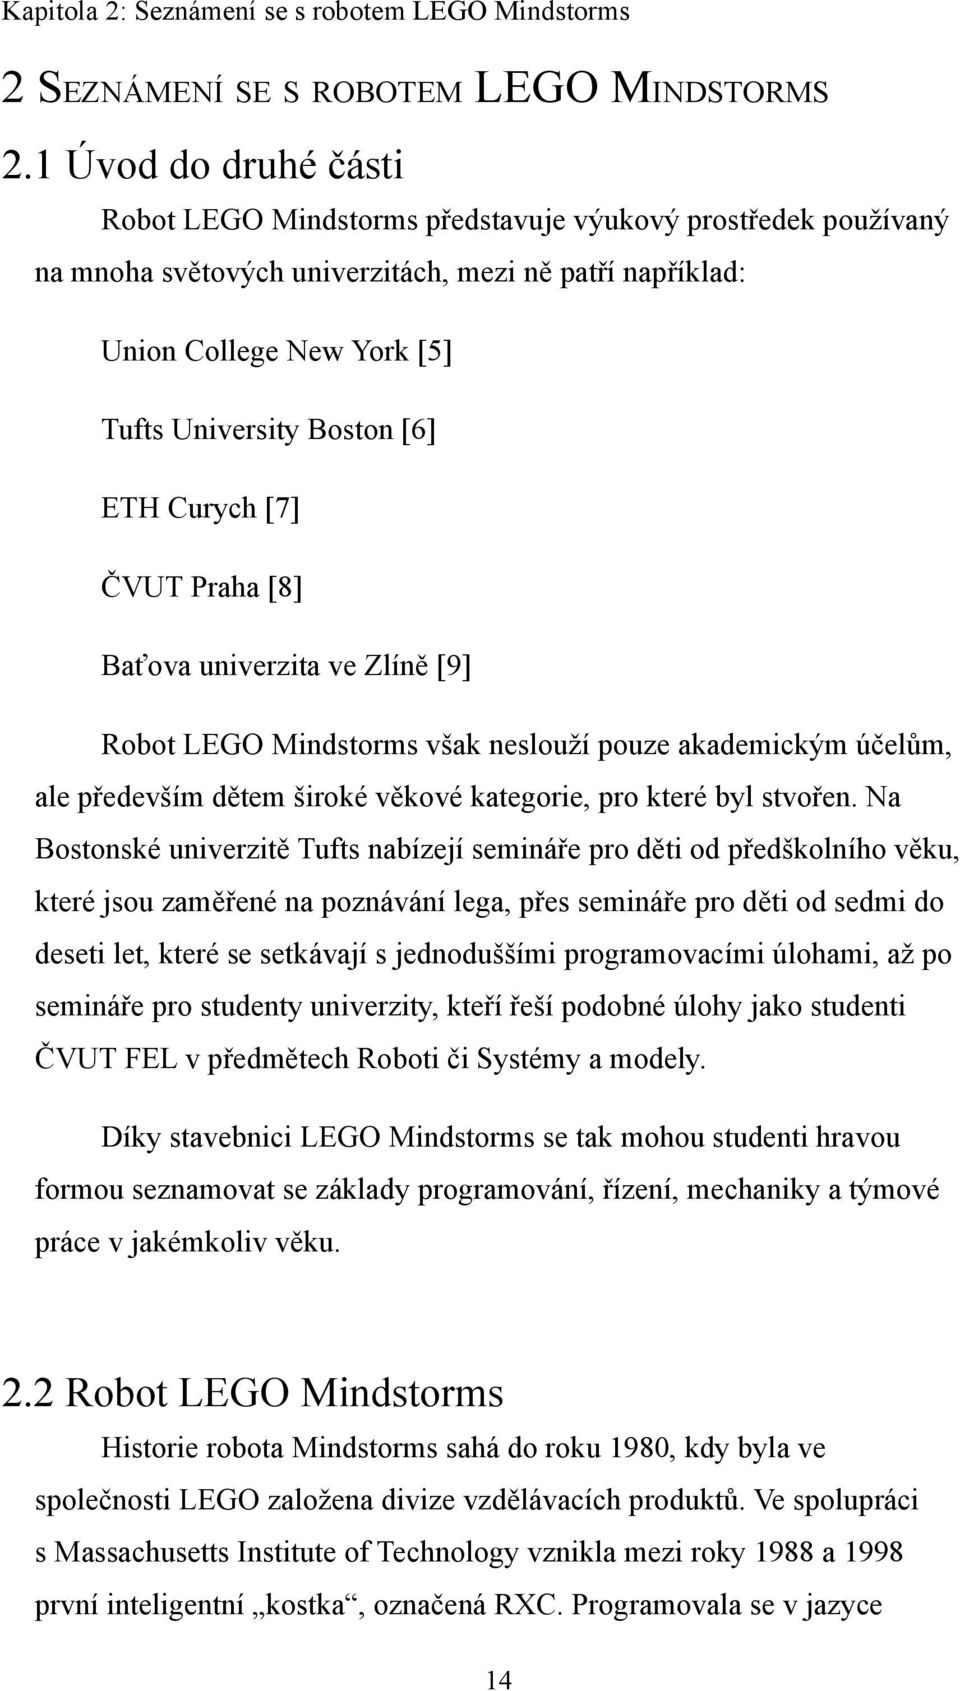 ETH Curych [7] ČVUT Praha [8] Baťova univerzita ve Zlíně [9] Robot LEGO Mindstorms však neslouží pouze akademickým účelům, ale především dětem široké věkové kategorie, pro které byl stvořen.